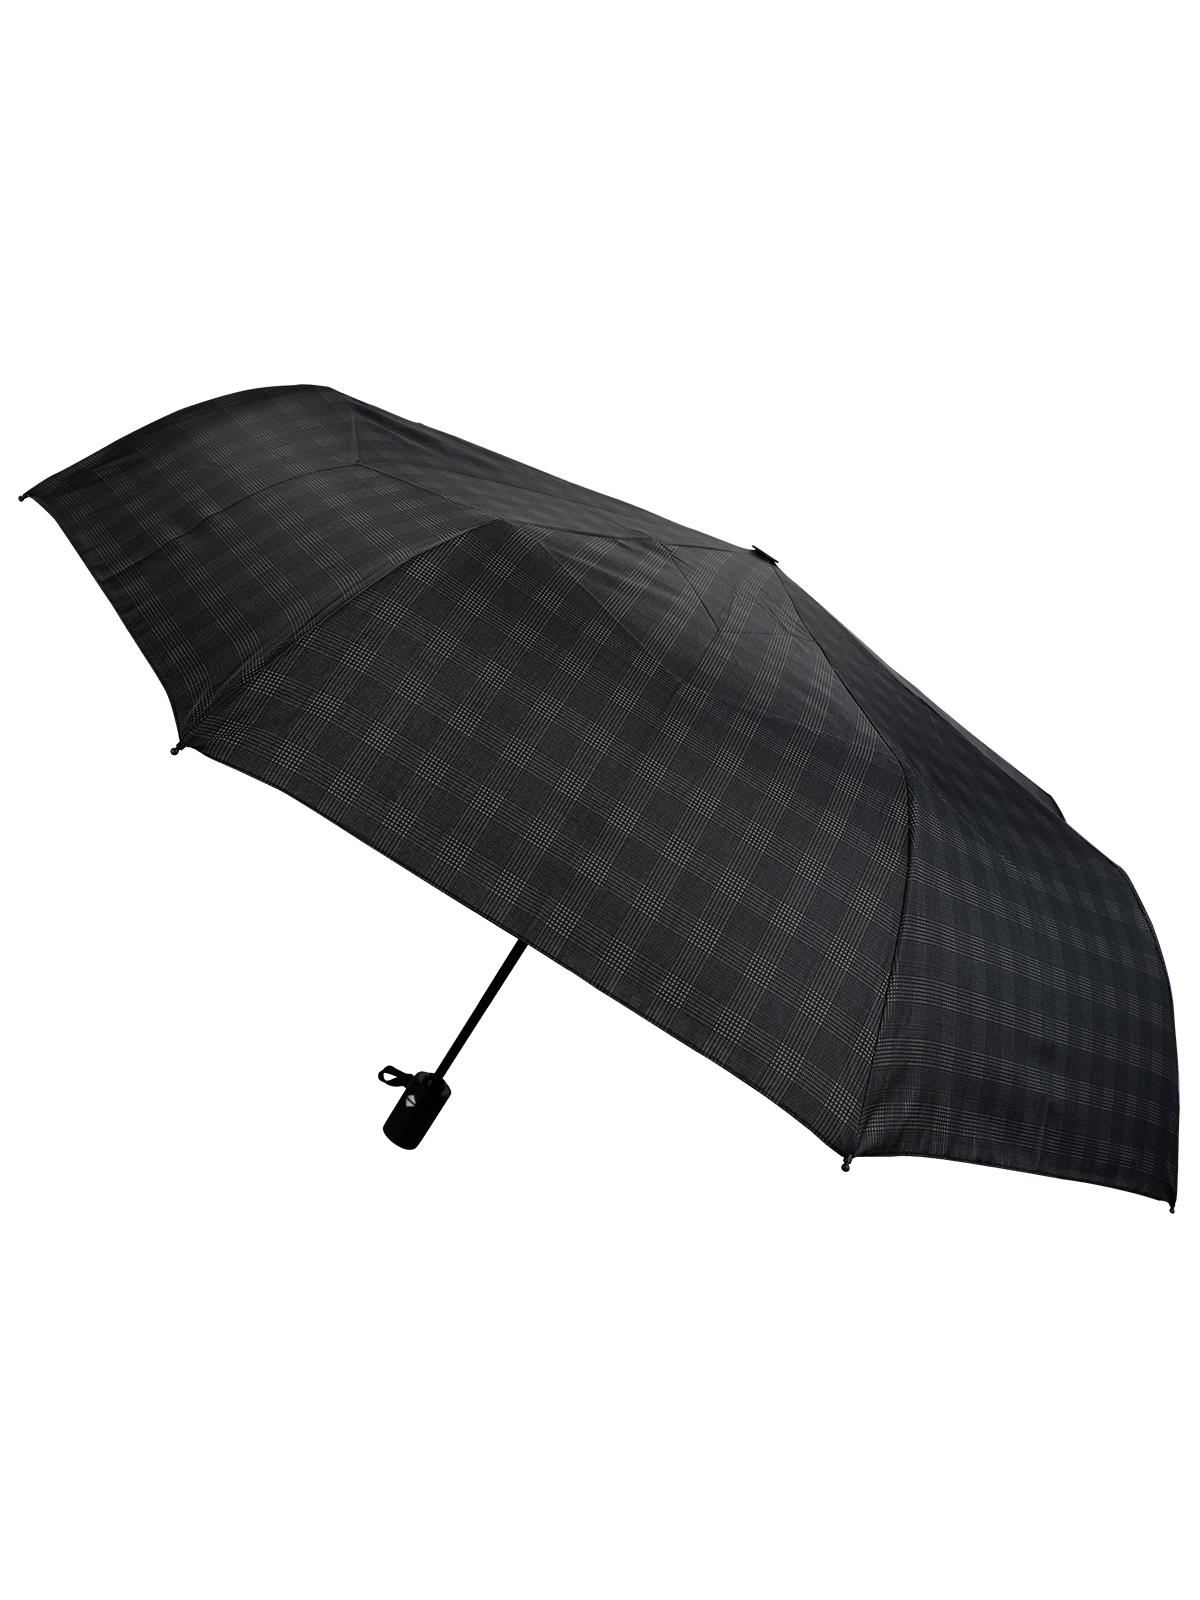 Rainwalker Otomatik Erkek Şemsiyesi Siyah